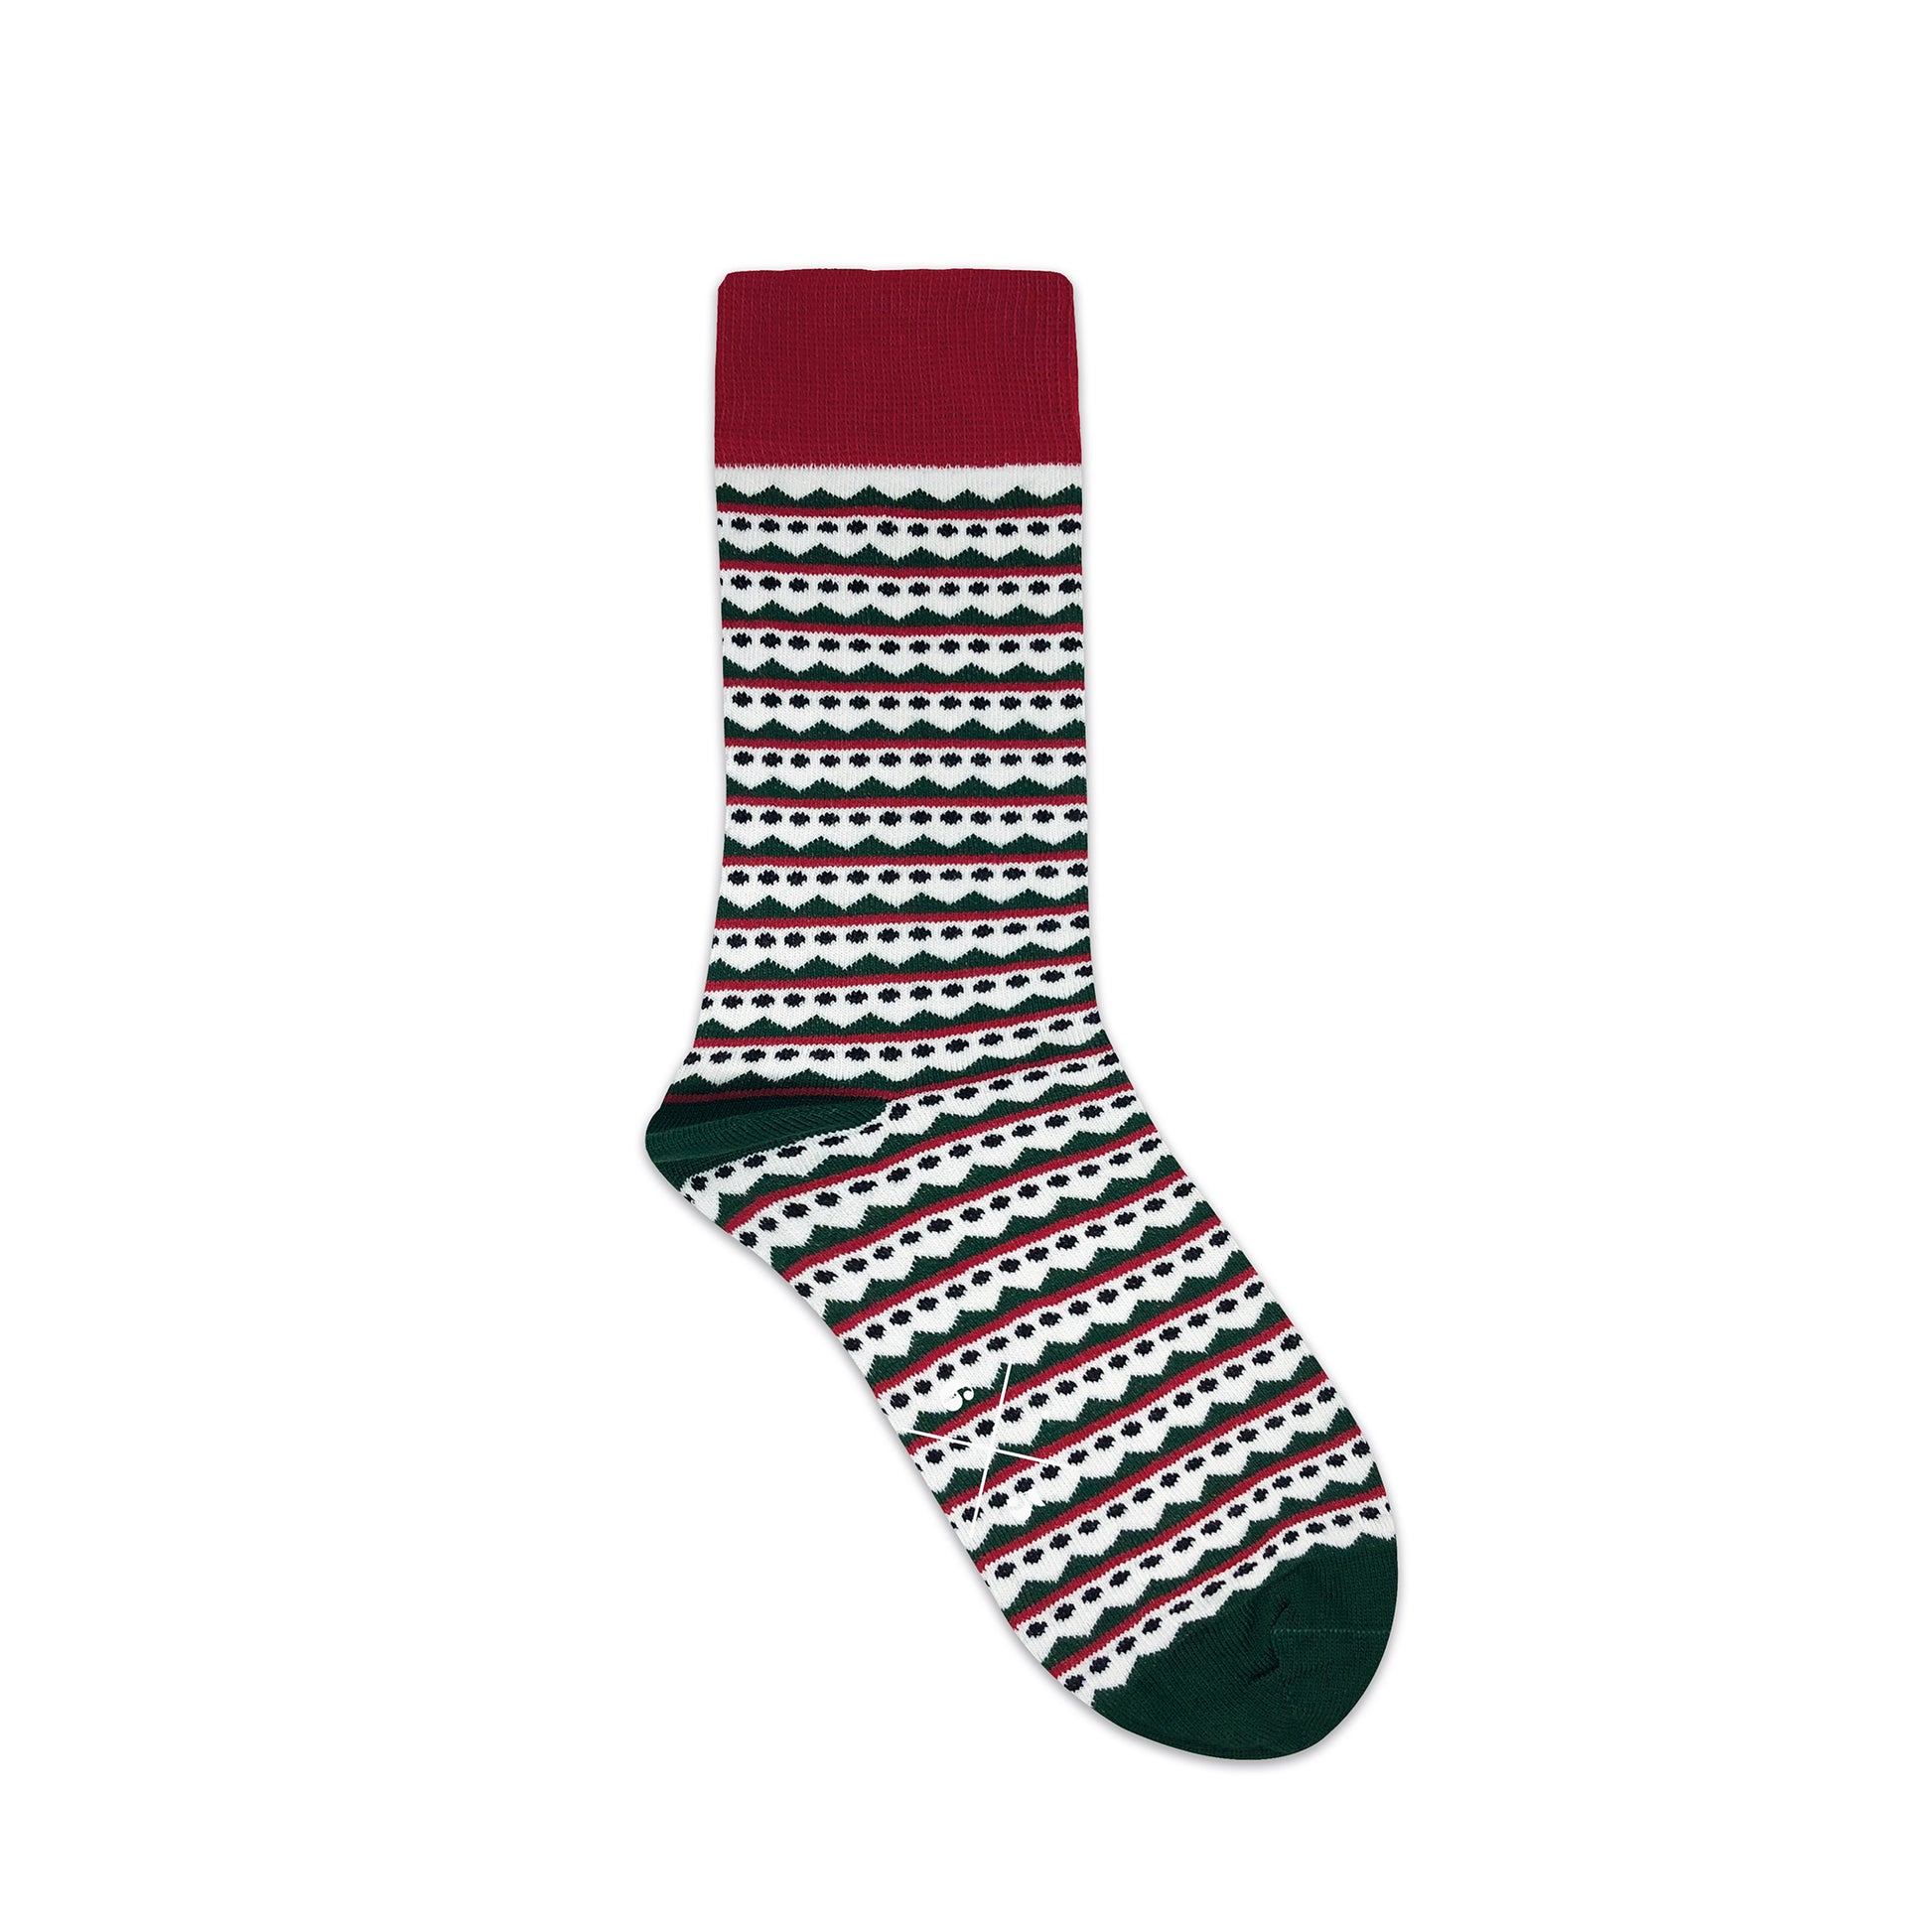 ALPES XMAS Yeşil Kırmızı Yılbaşı Desenli Unisex Çorap - sixtimesfive